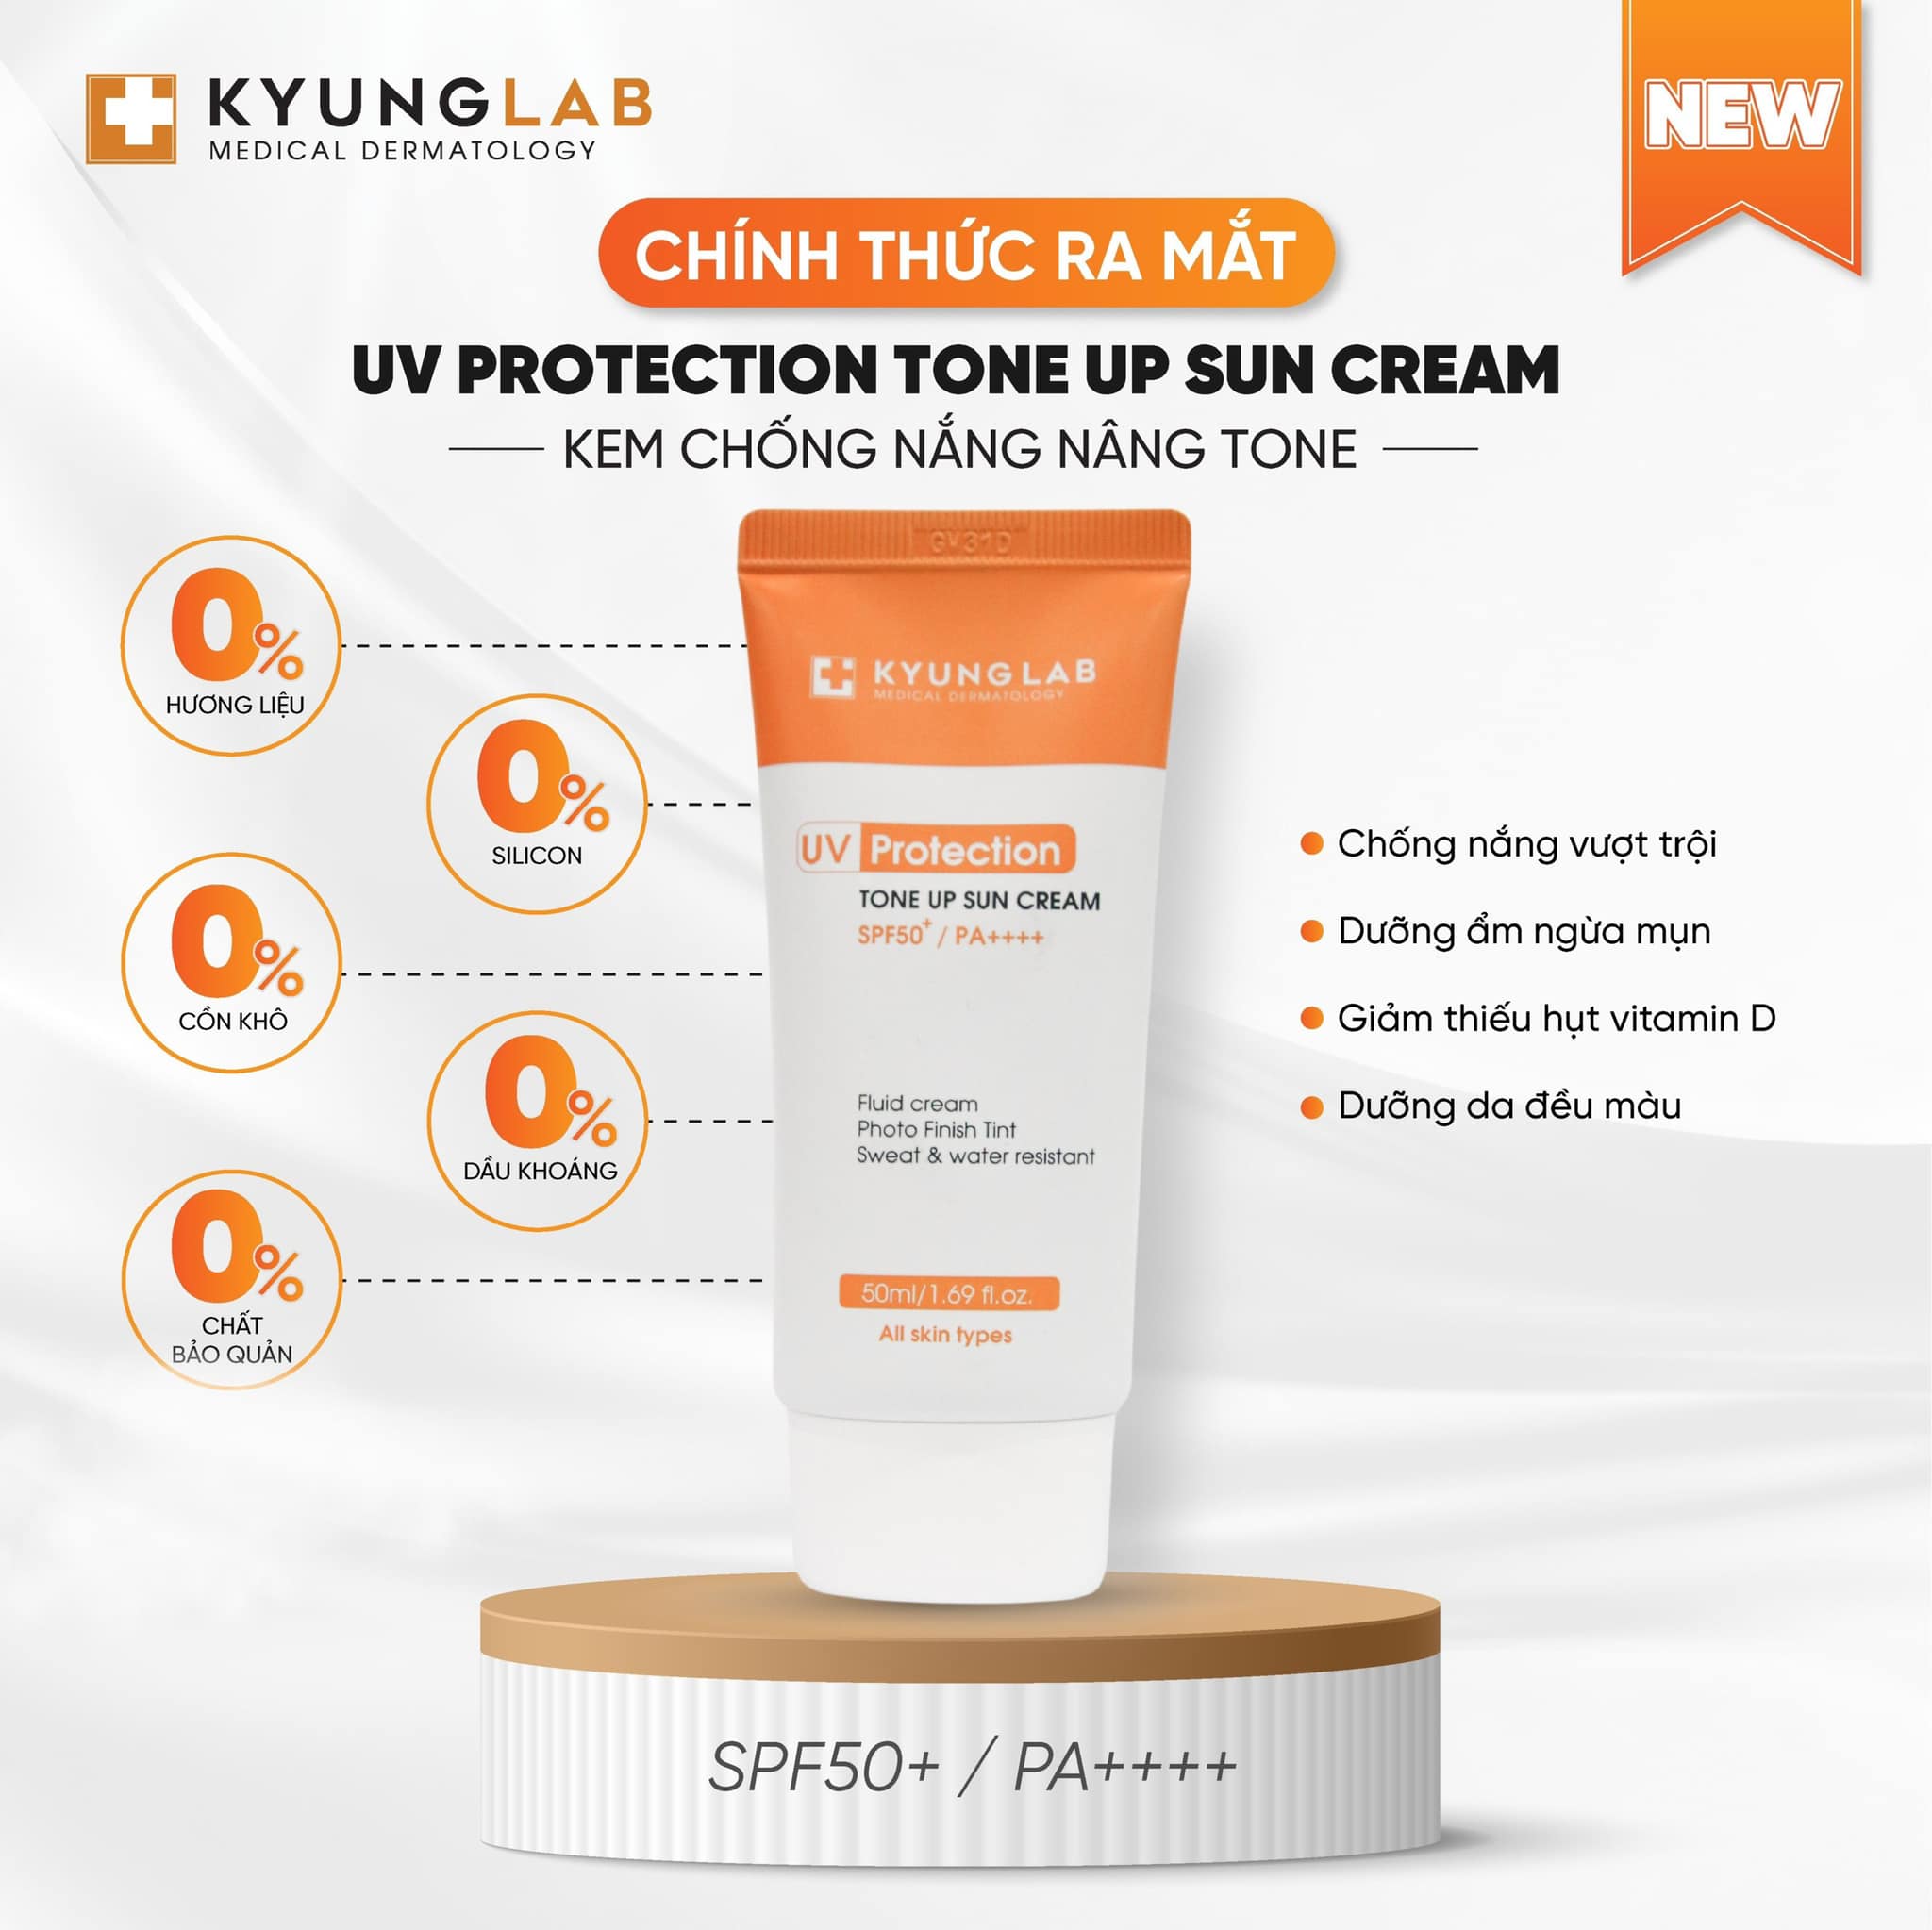 Kem chống nắng nâng tone Kyung Lab UV Protection Tone Up Sun Cream - 50ml